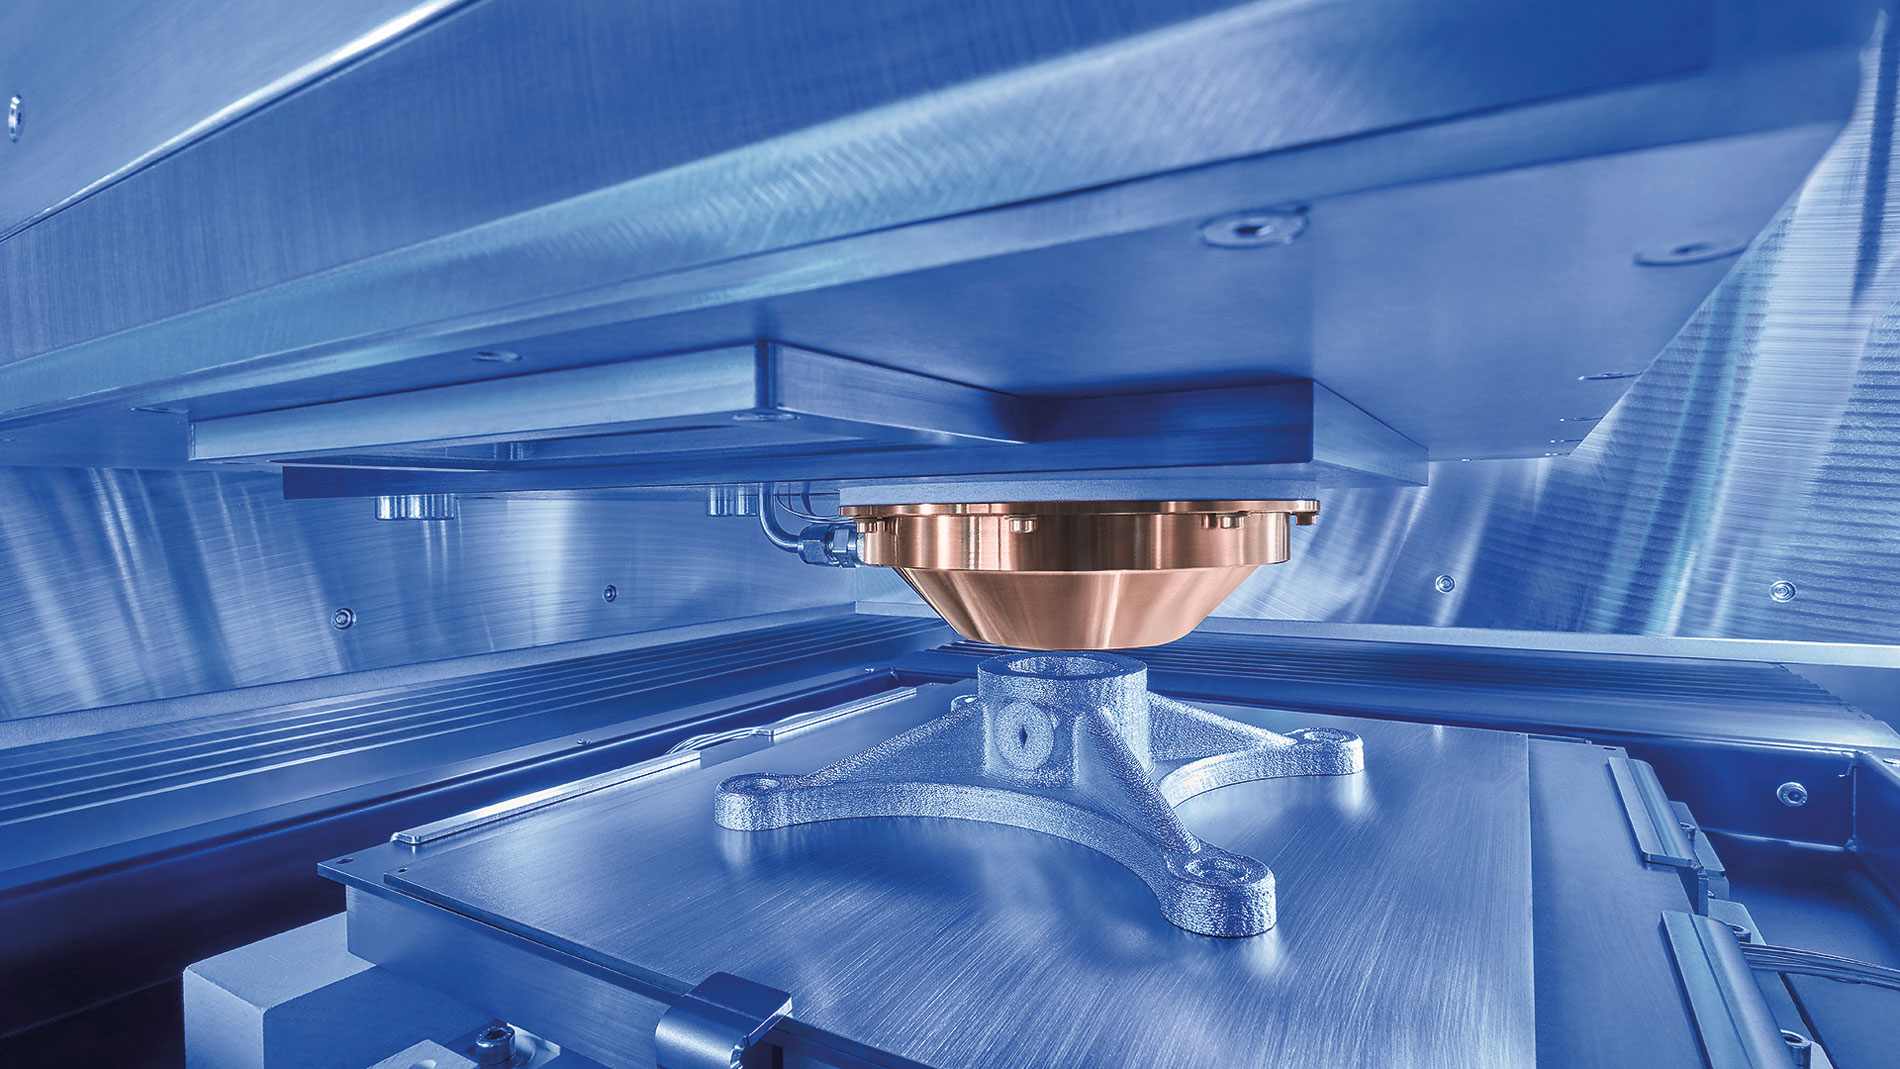 Das neue Liquid Metal Printing-System von Grob. Bilder: Grob